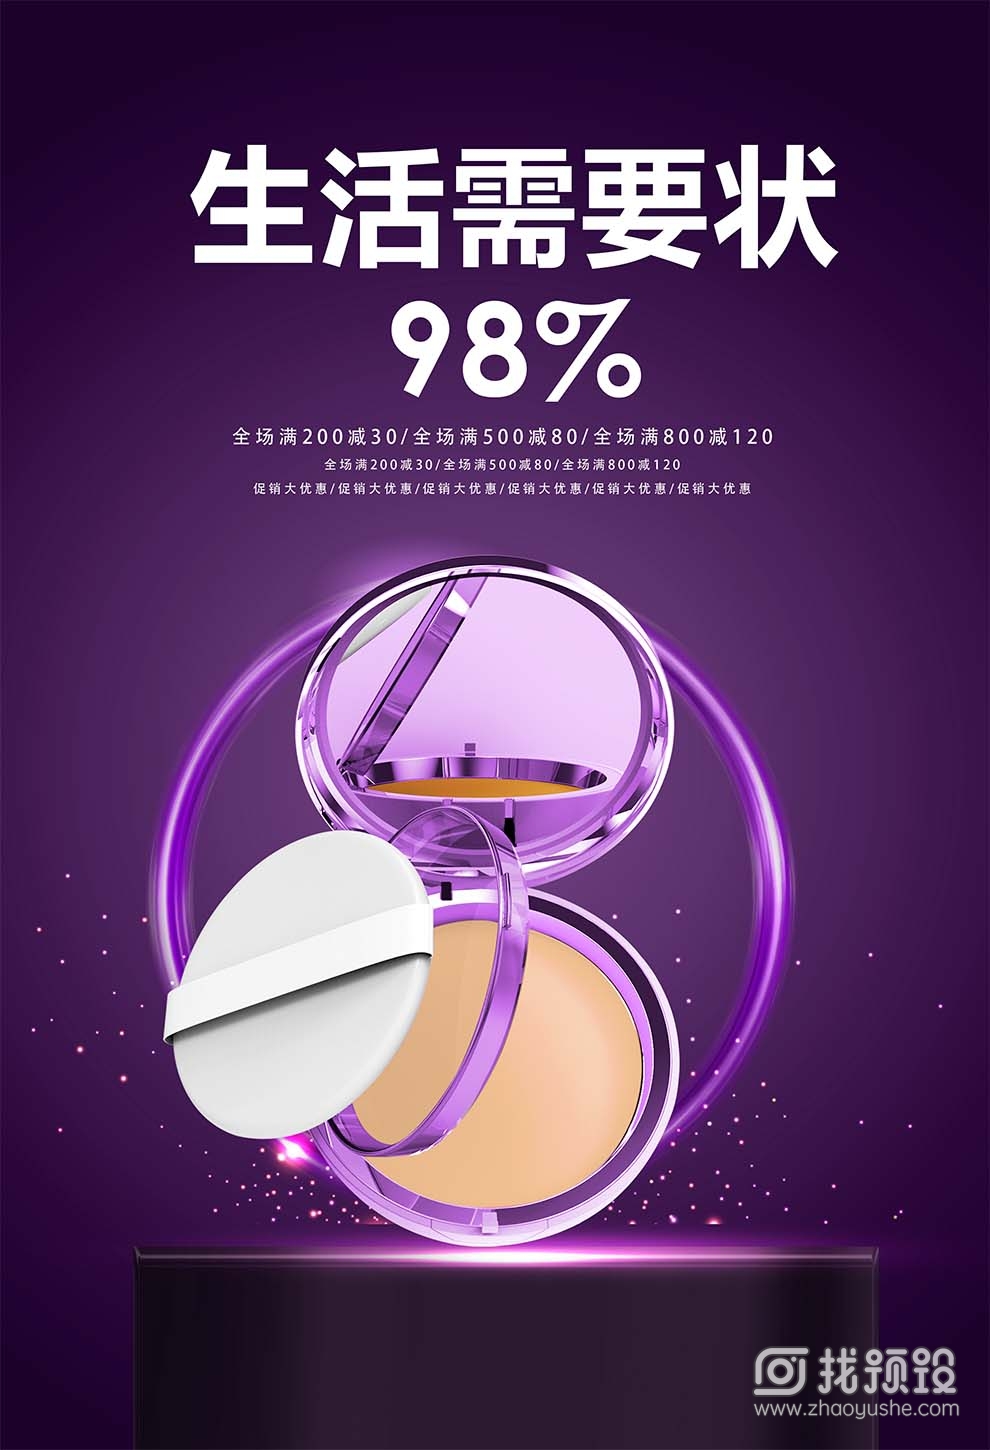 找预设网紫色化妆品广告设计psd2023年3月29日 2023010719363834